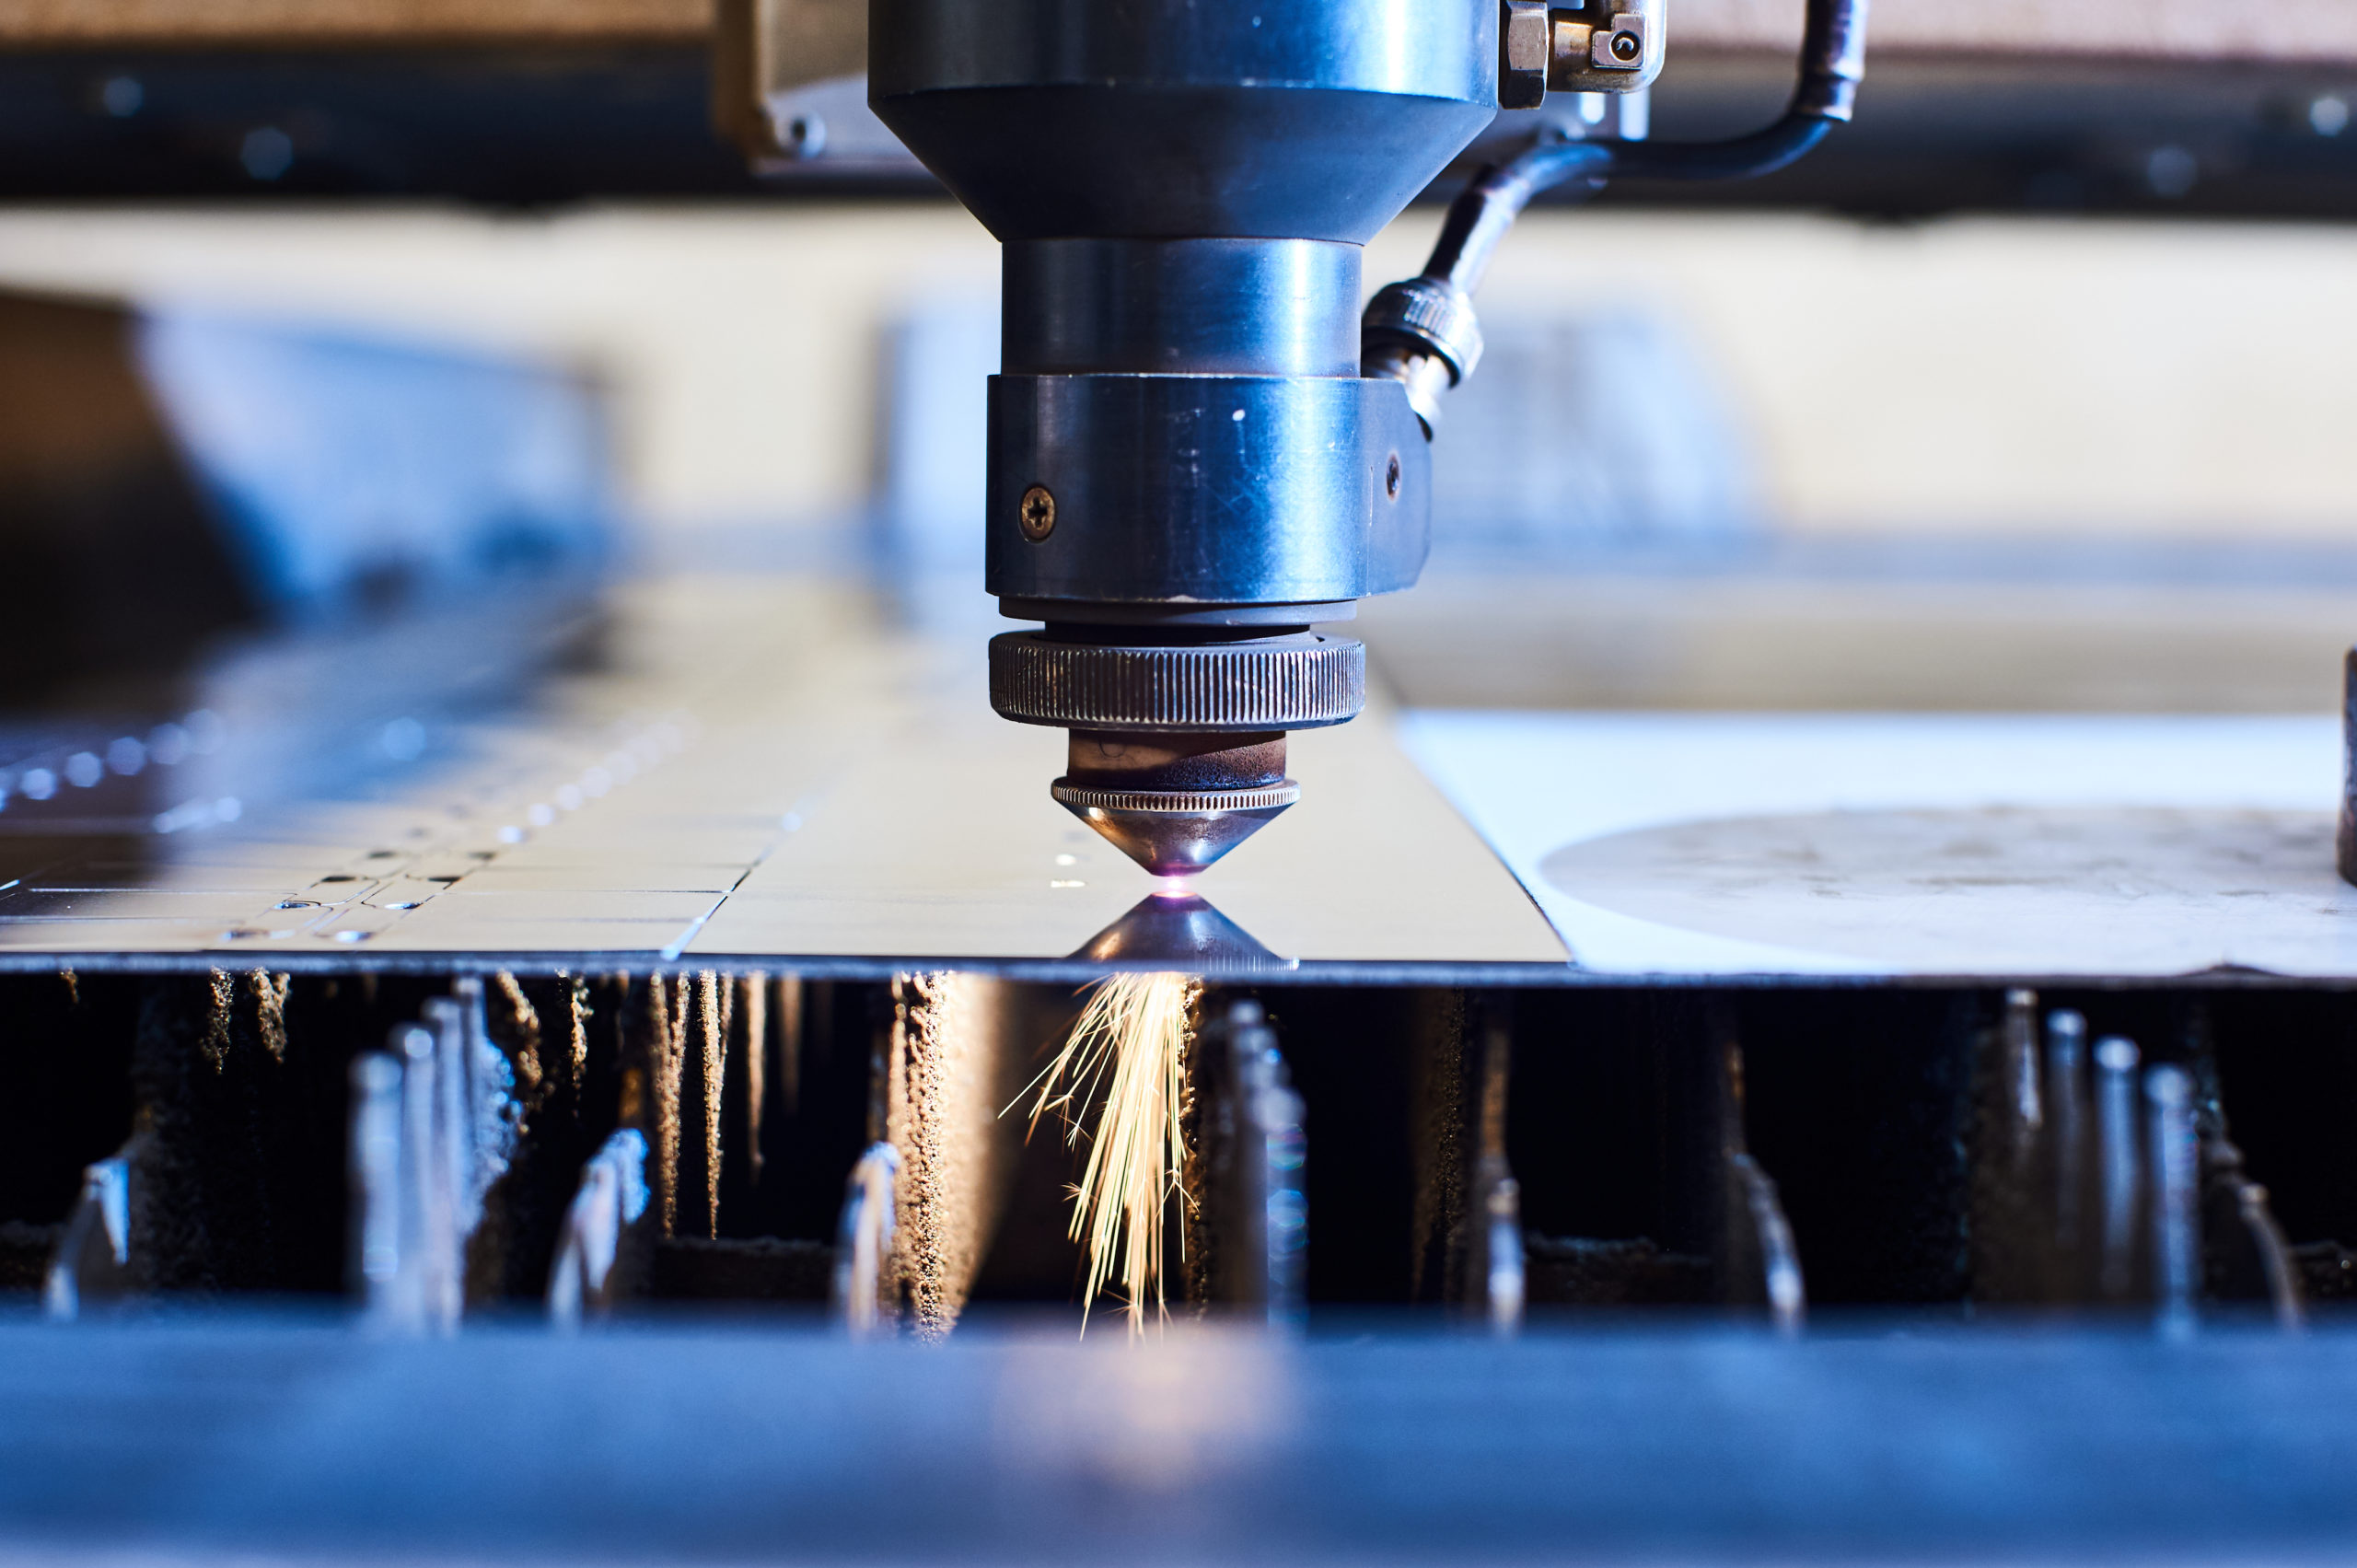 CNC laser cutting machine making intricate cuts through steel.